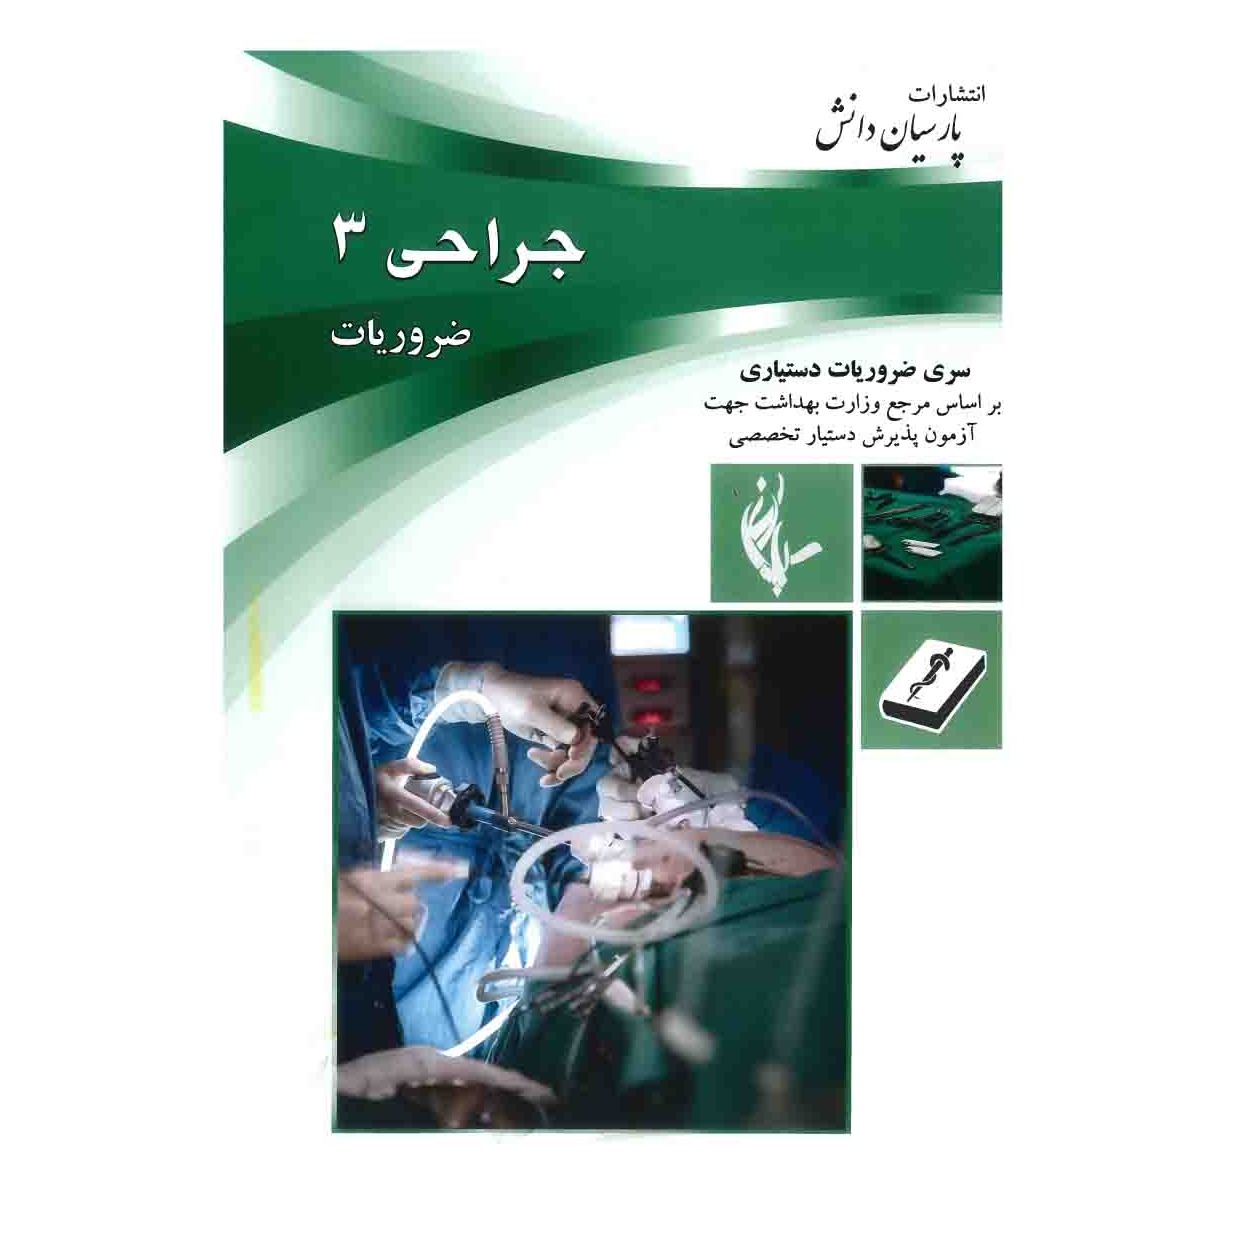 خبر شماره 304: درسنامه پارسیان جراحی جلد 3 به همراه فیلم آموزشی منتشر شد